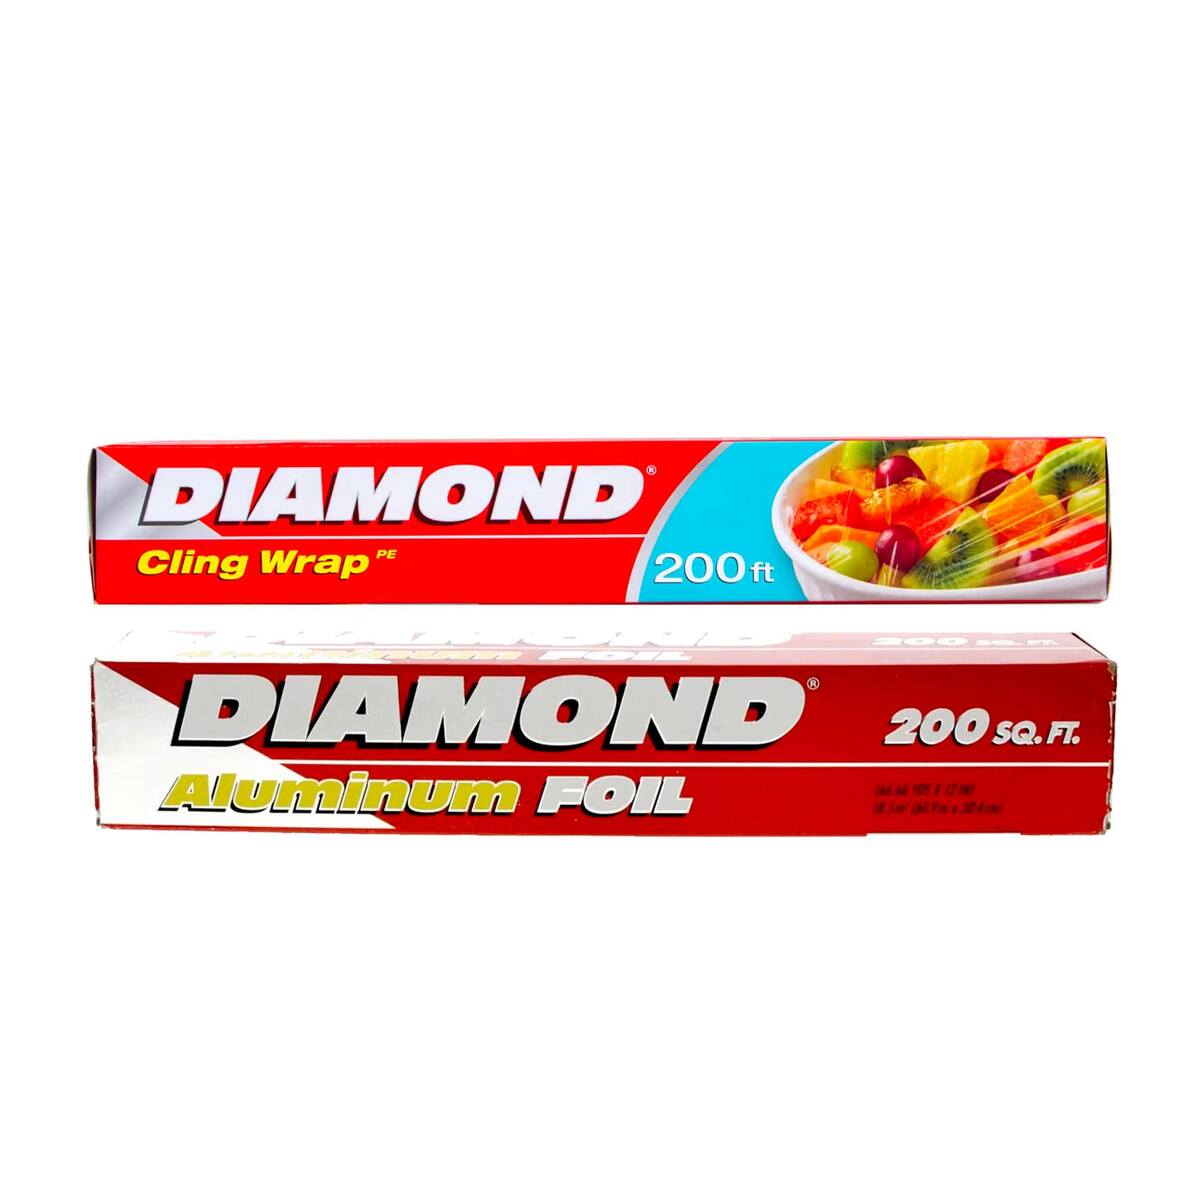 Diamond Aluminium Foil 200sq.ft + Cling Wrap 200ft